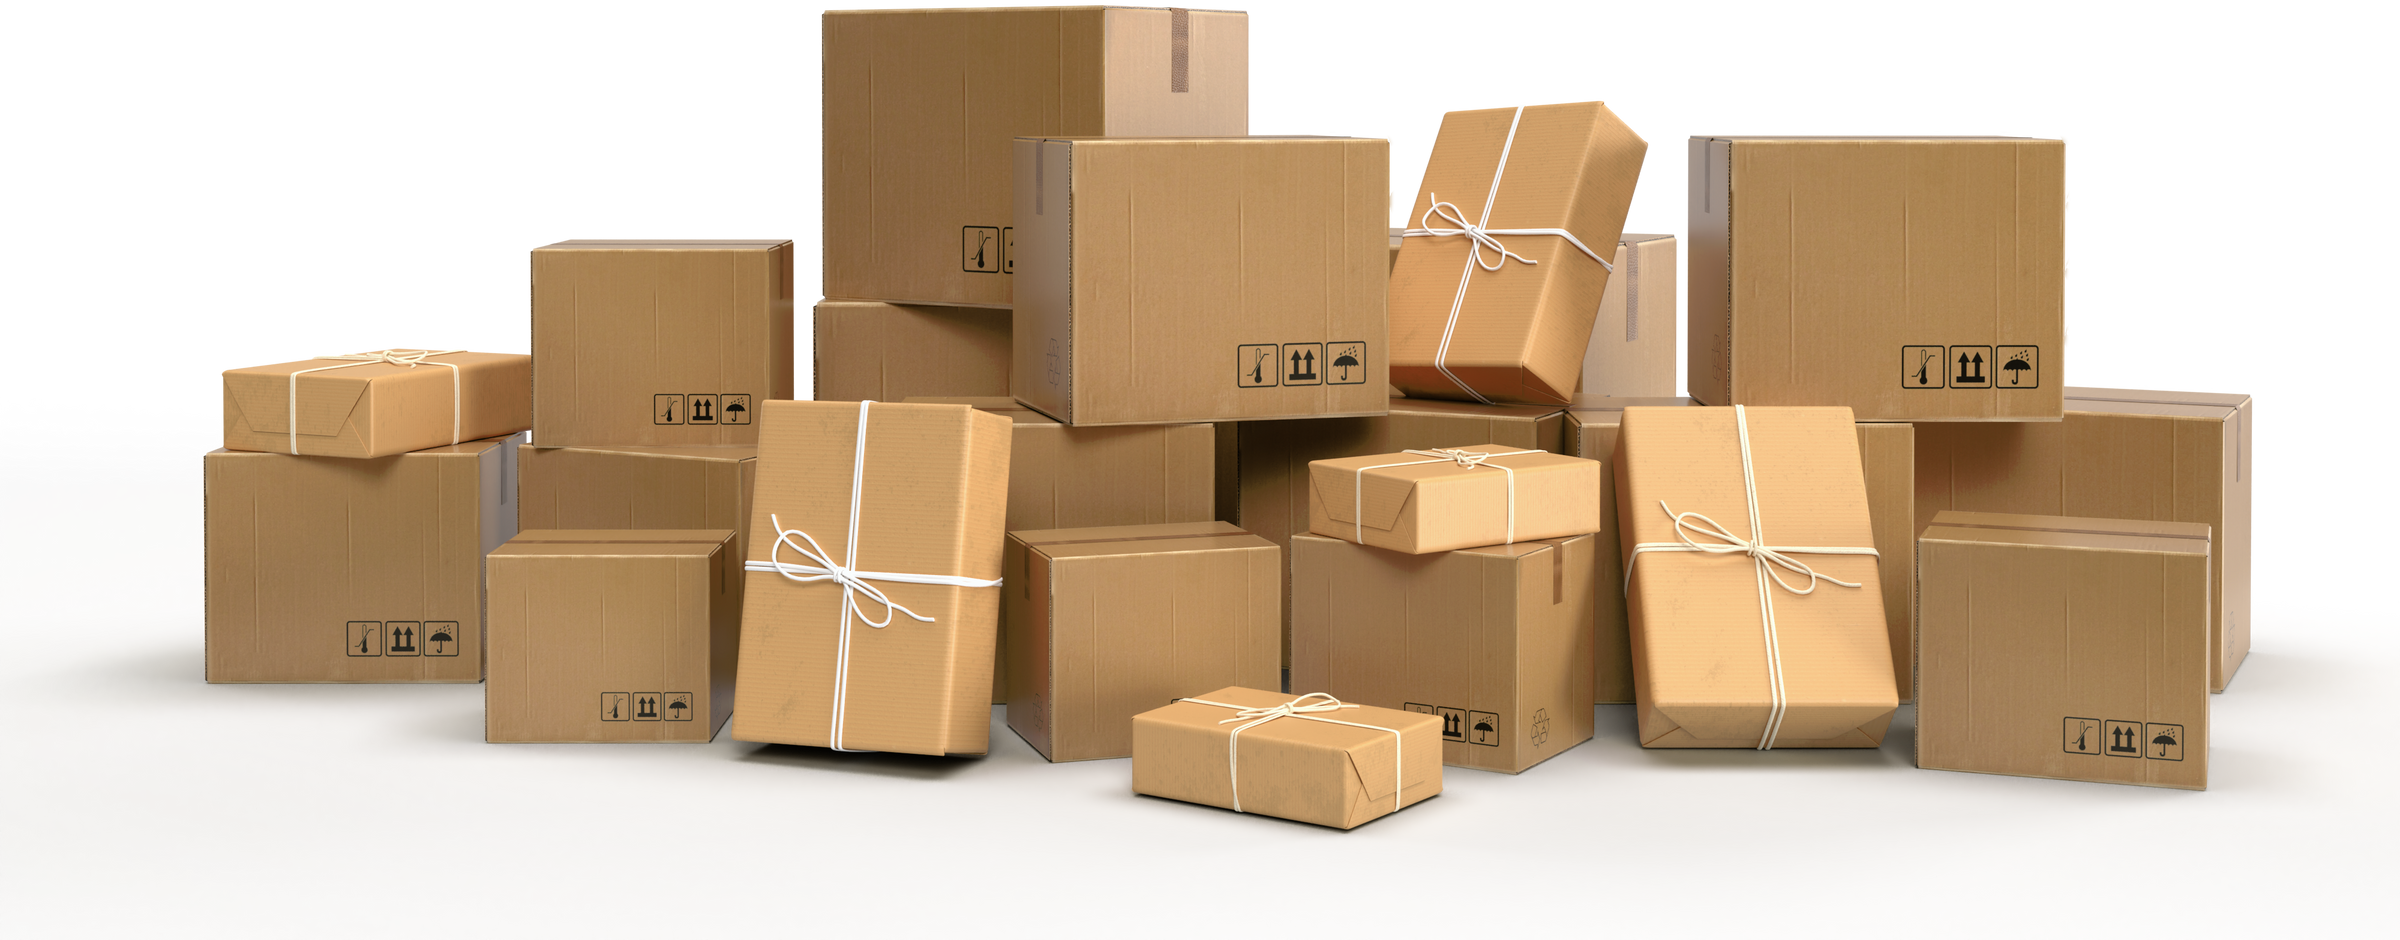 Cardboard Boxes as Packaging